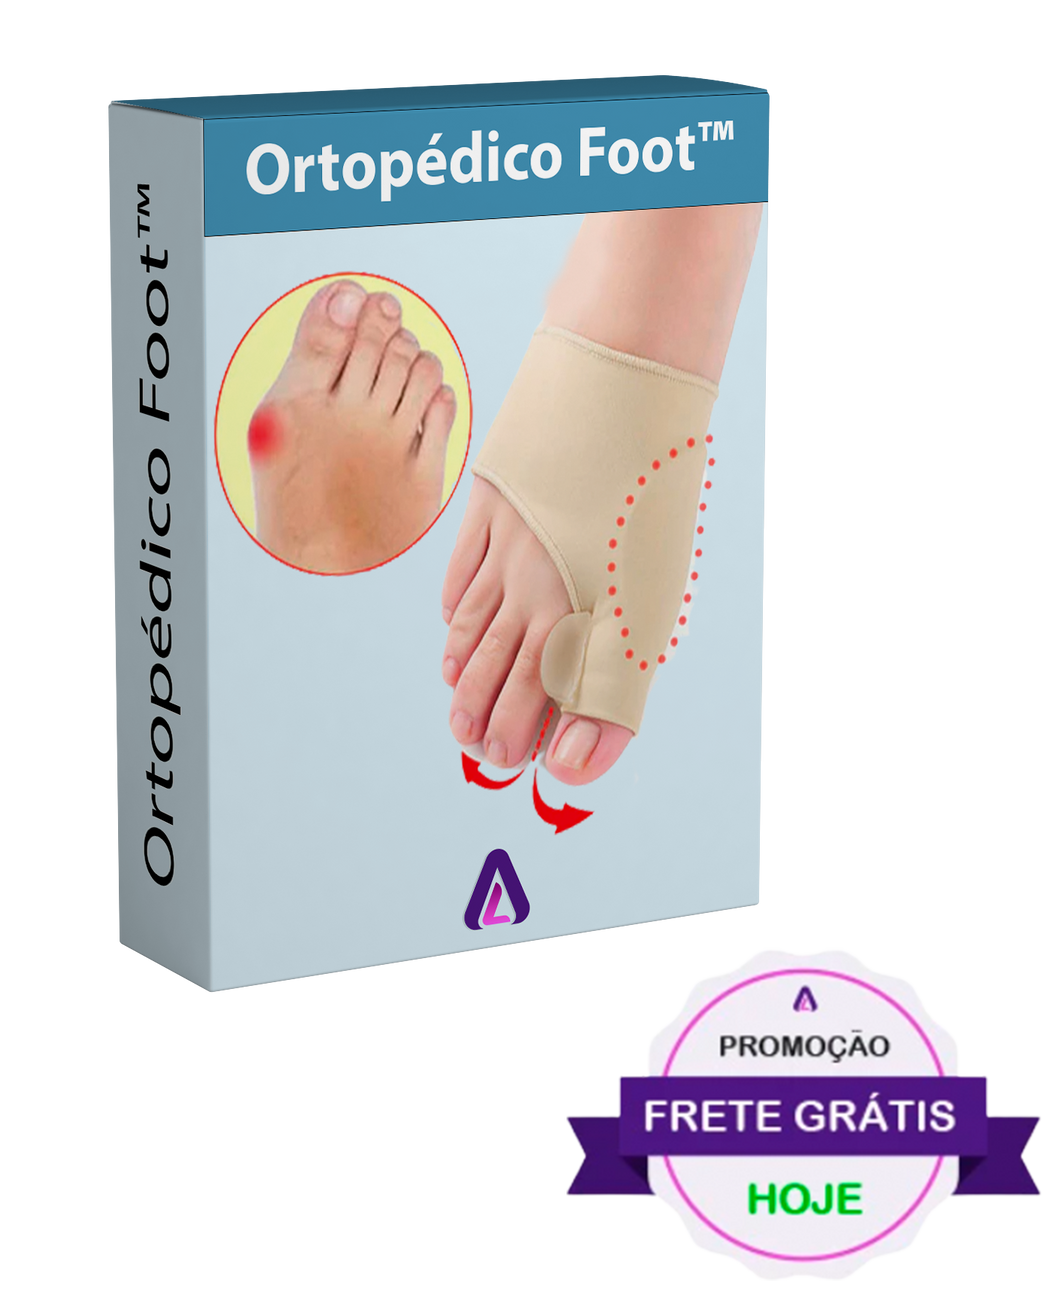 Ortopédico Foot™ - Acabe com as dores no Joanete ou esporão - OFERTA